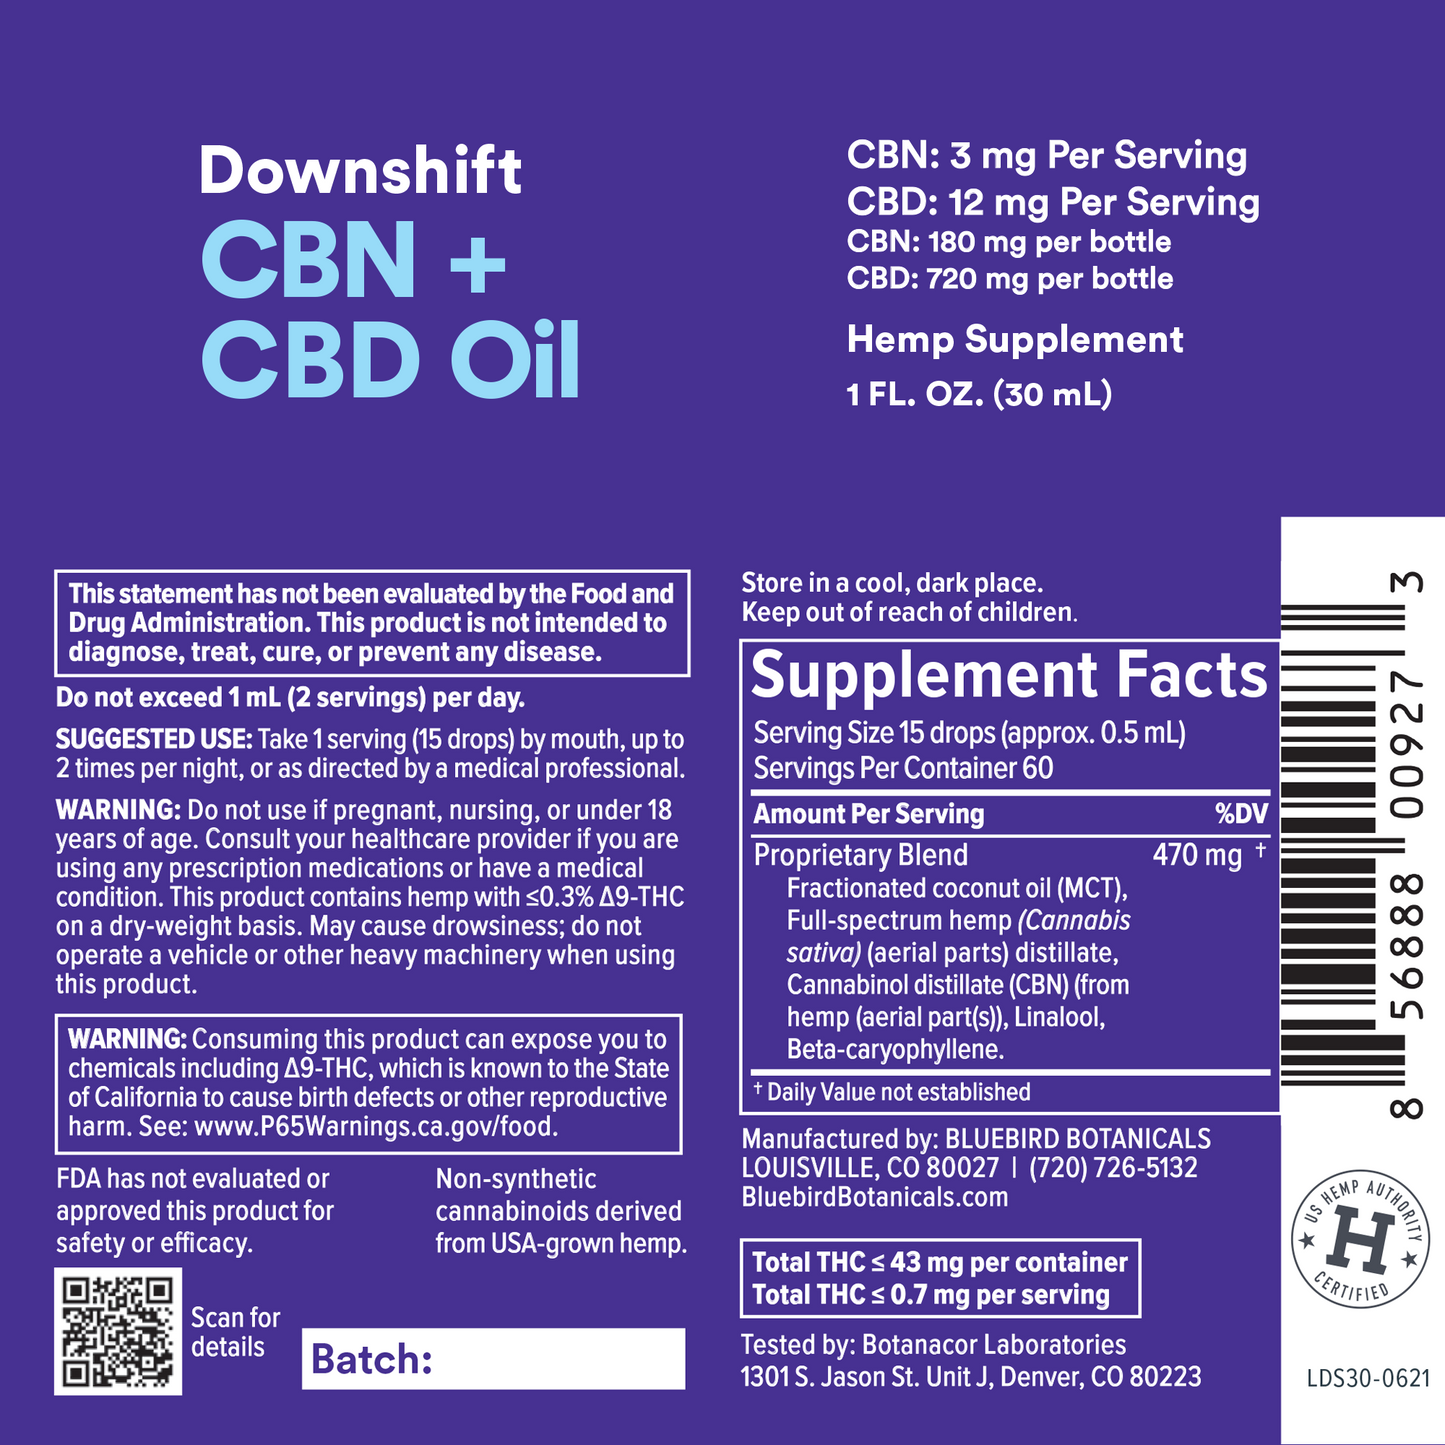 Downshift CBN + CBD Oil Supplement Facts Bluebird Botanicals   